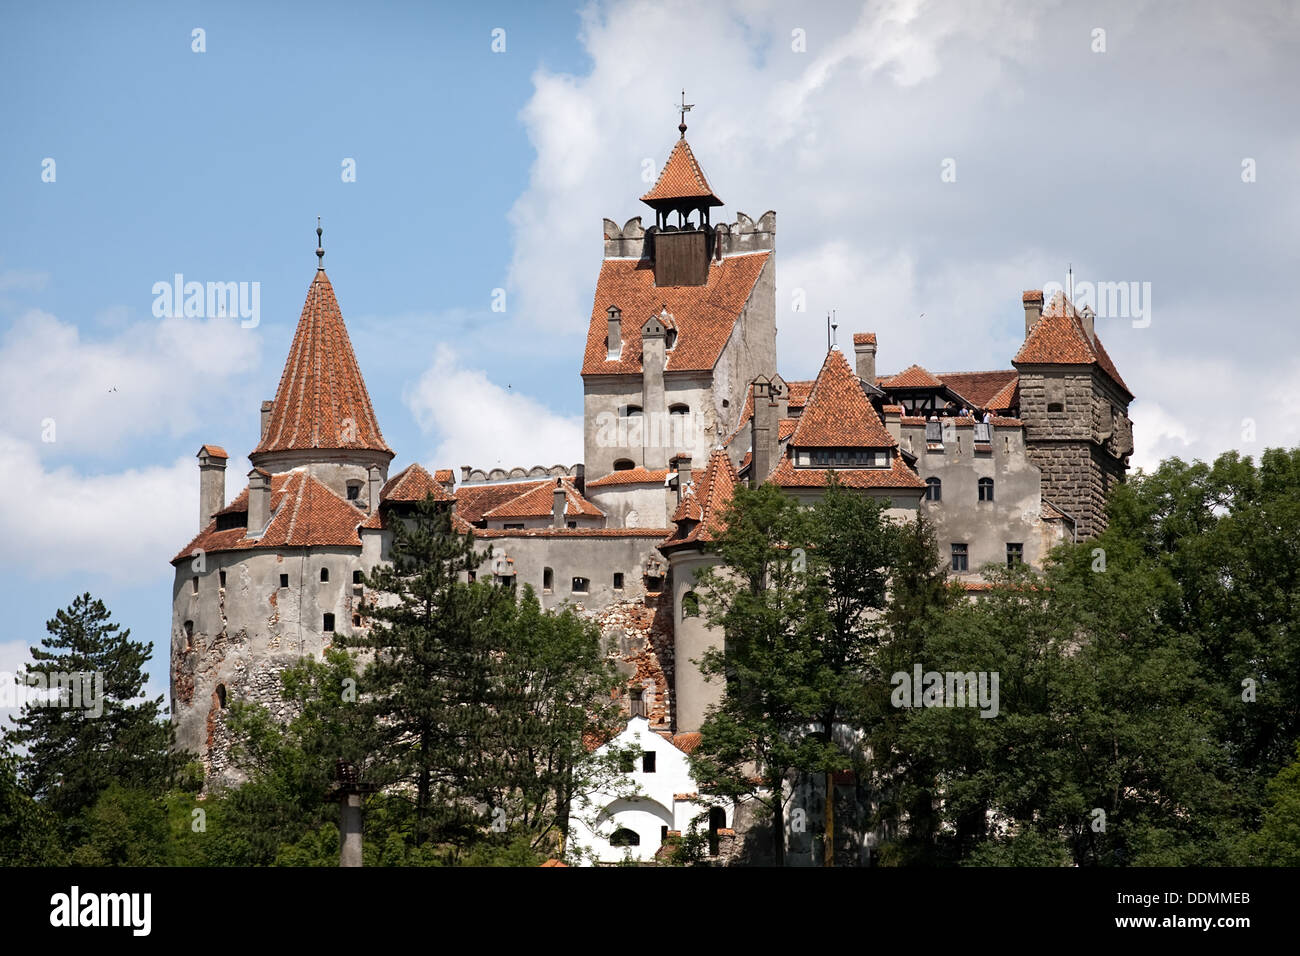 front view of Bran medieval castle, Wallachia, Romania Stock Photo